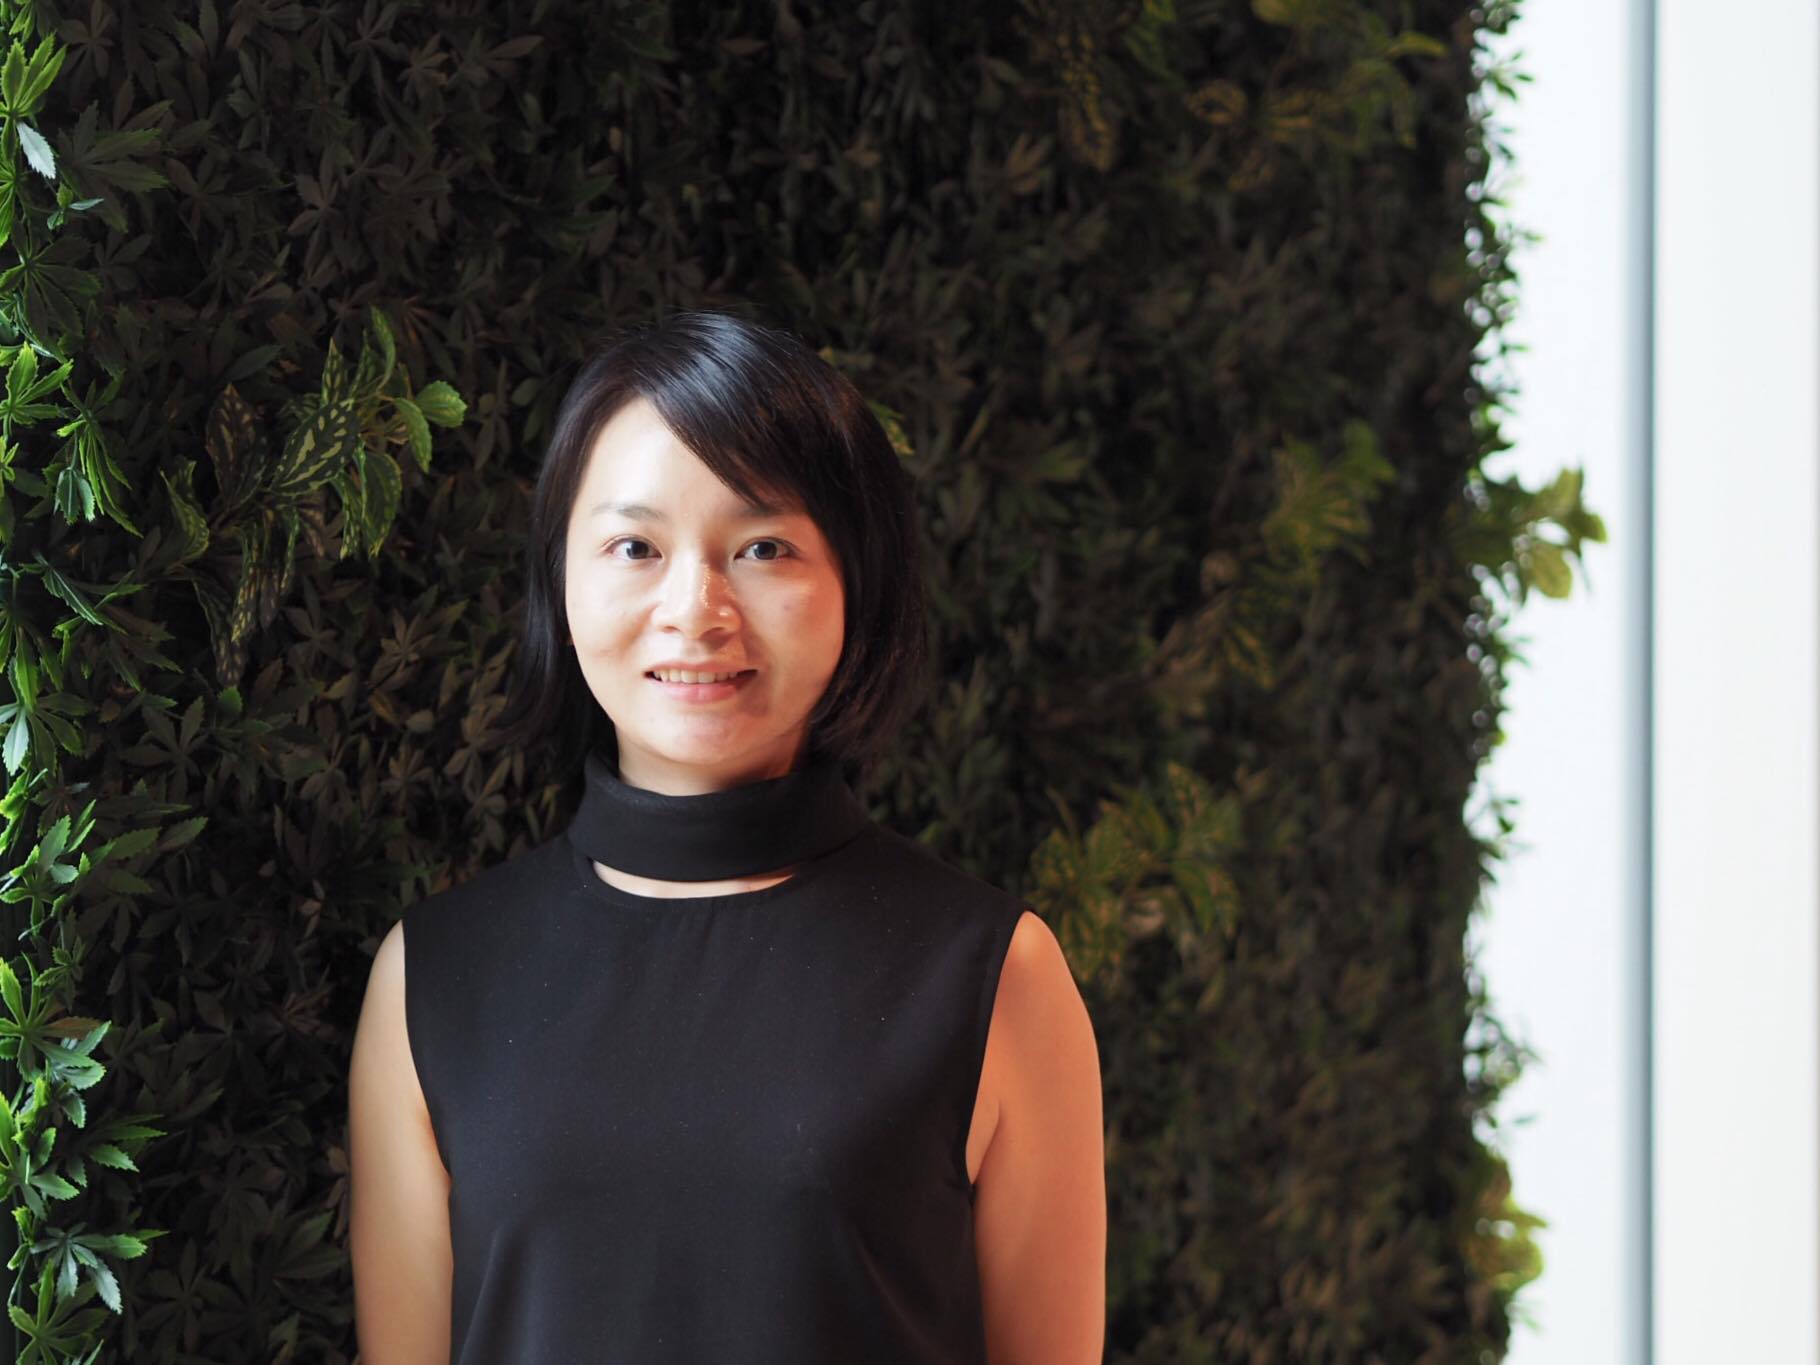 Pan Yaozhang of Shopee, interdisciplinary transitions: Women in Tech